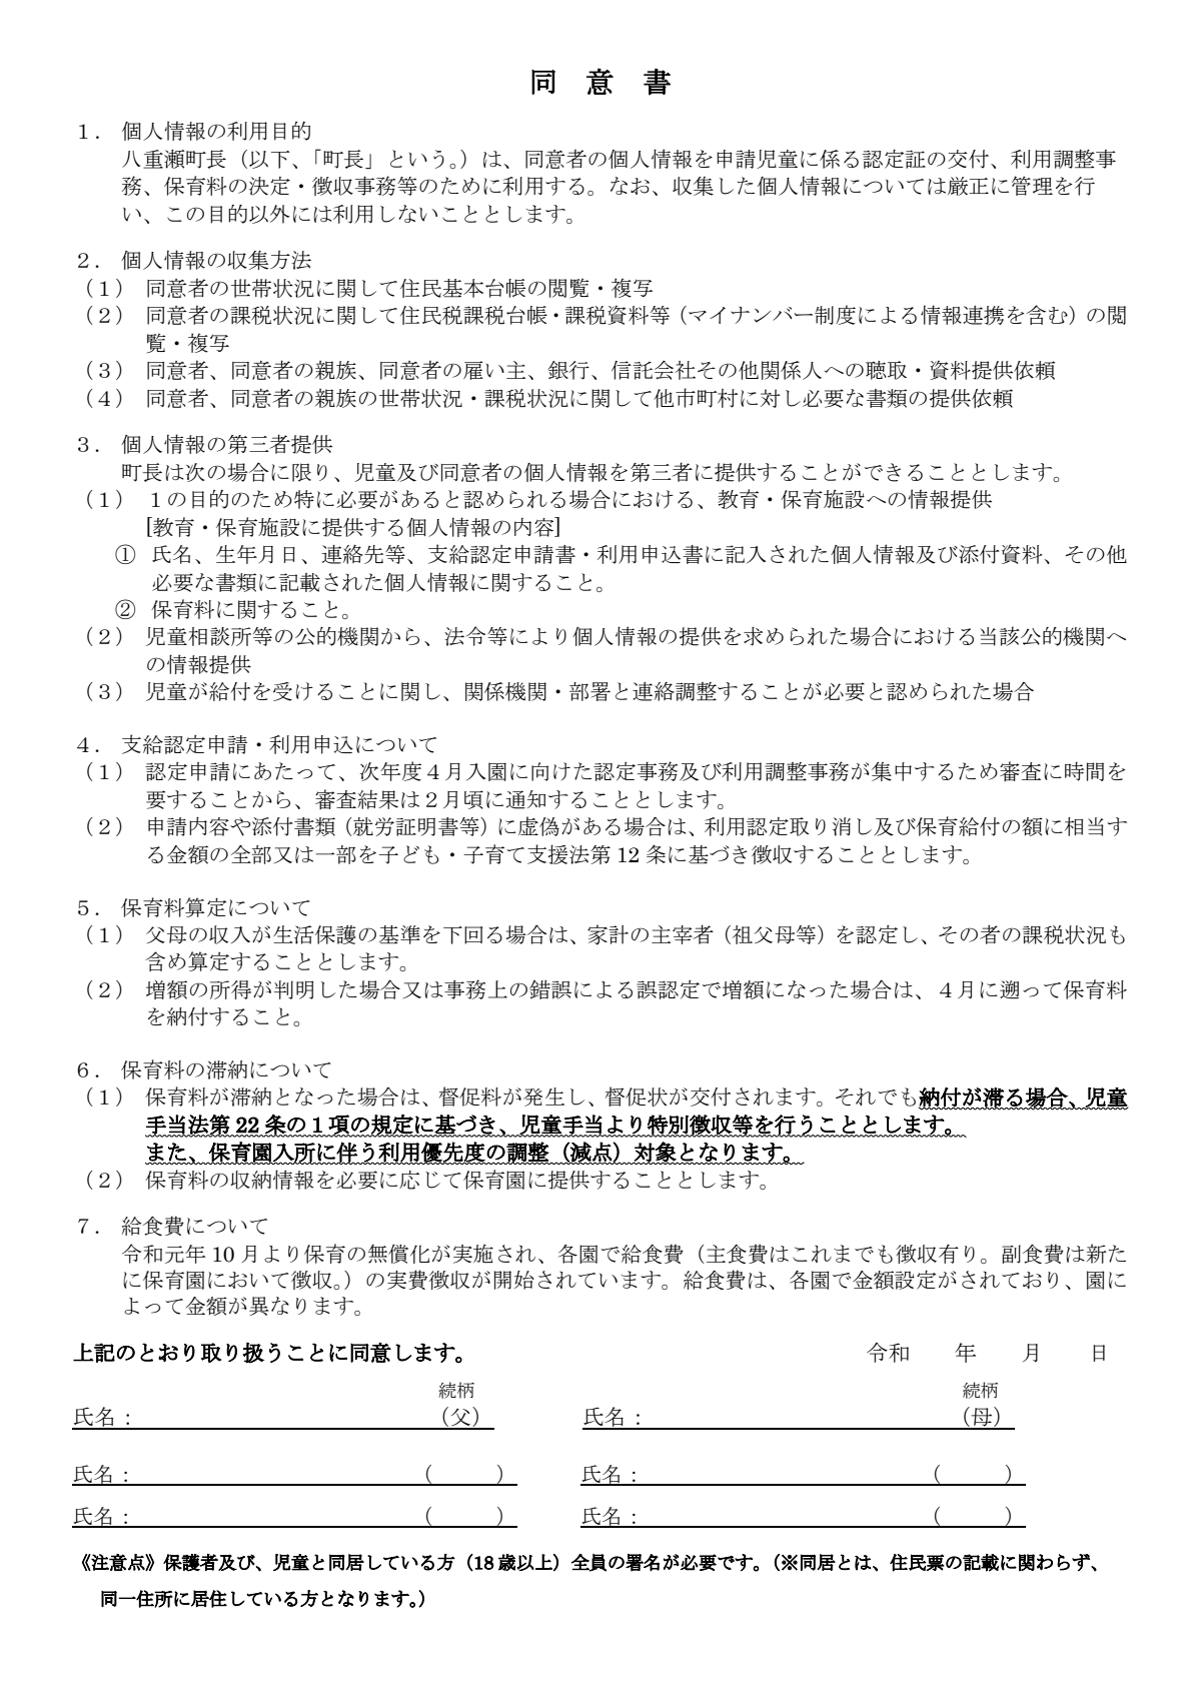 03 9.様式①同意書.pdf